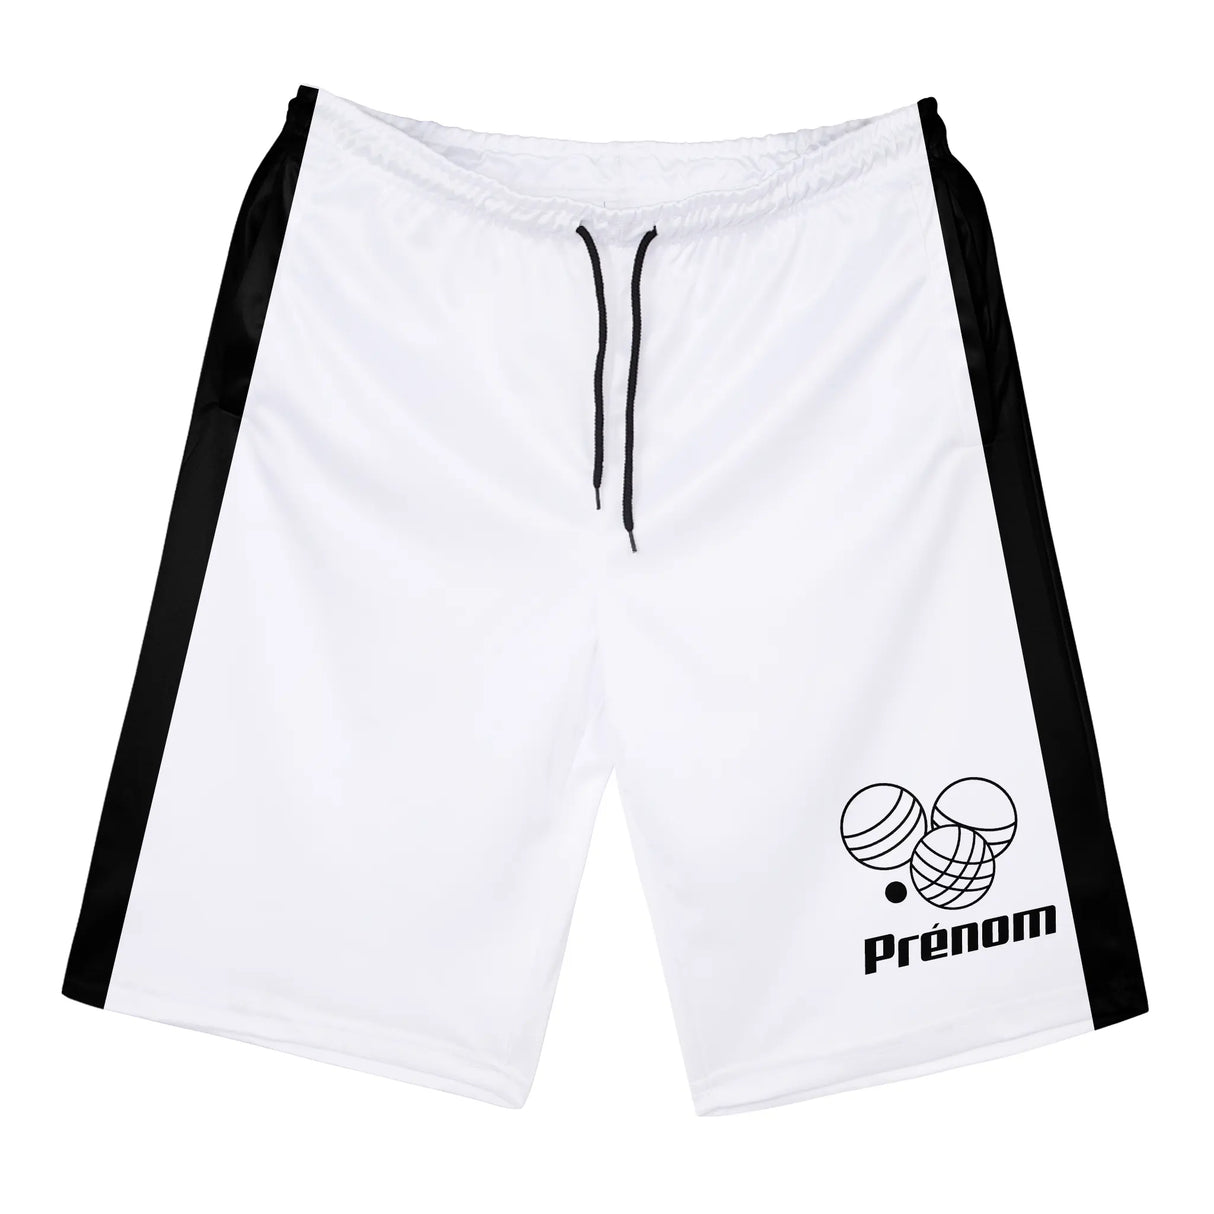 Shorts de Sport Prénom – Confort et Style pour Chaque Match - A010724N36 - Blanc